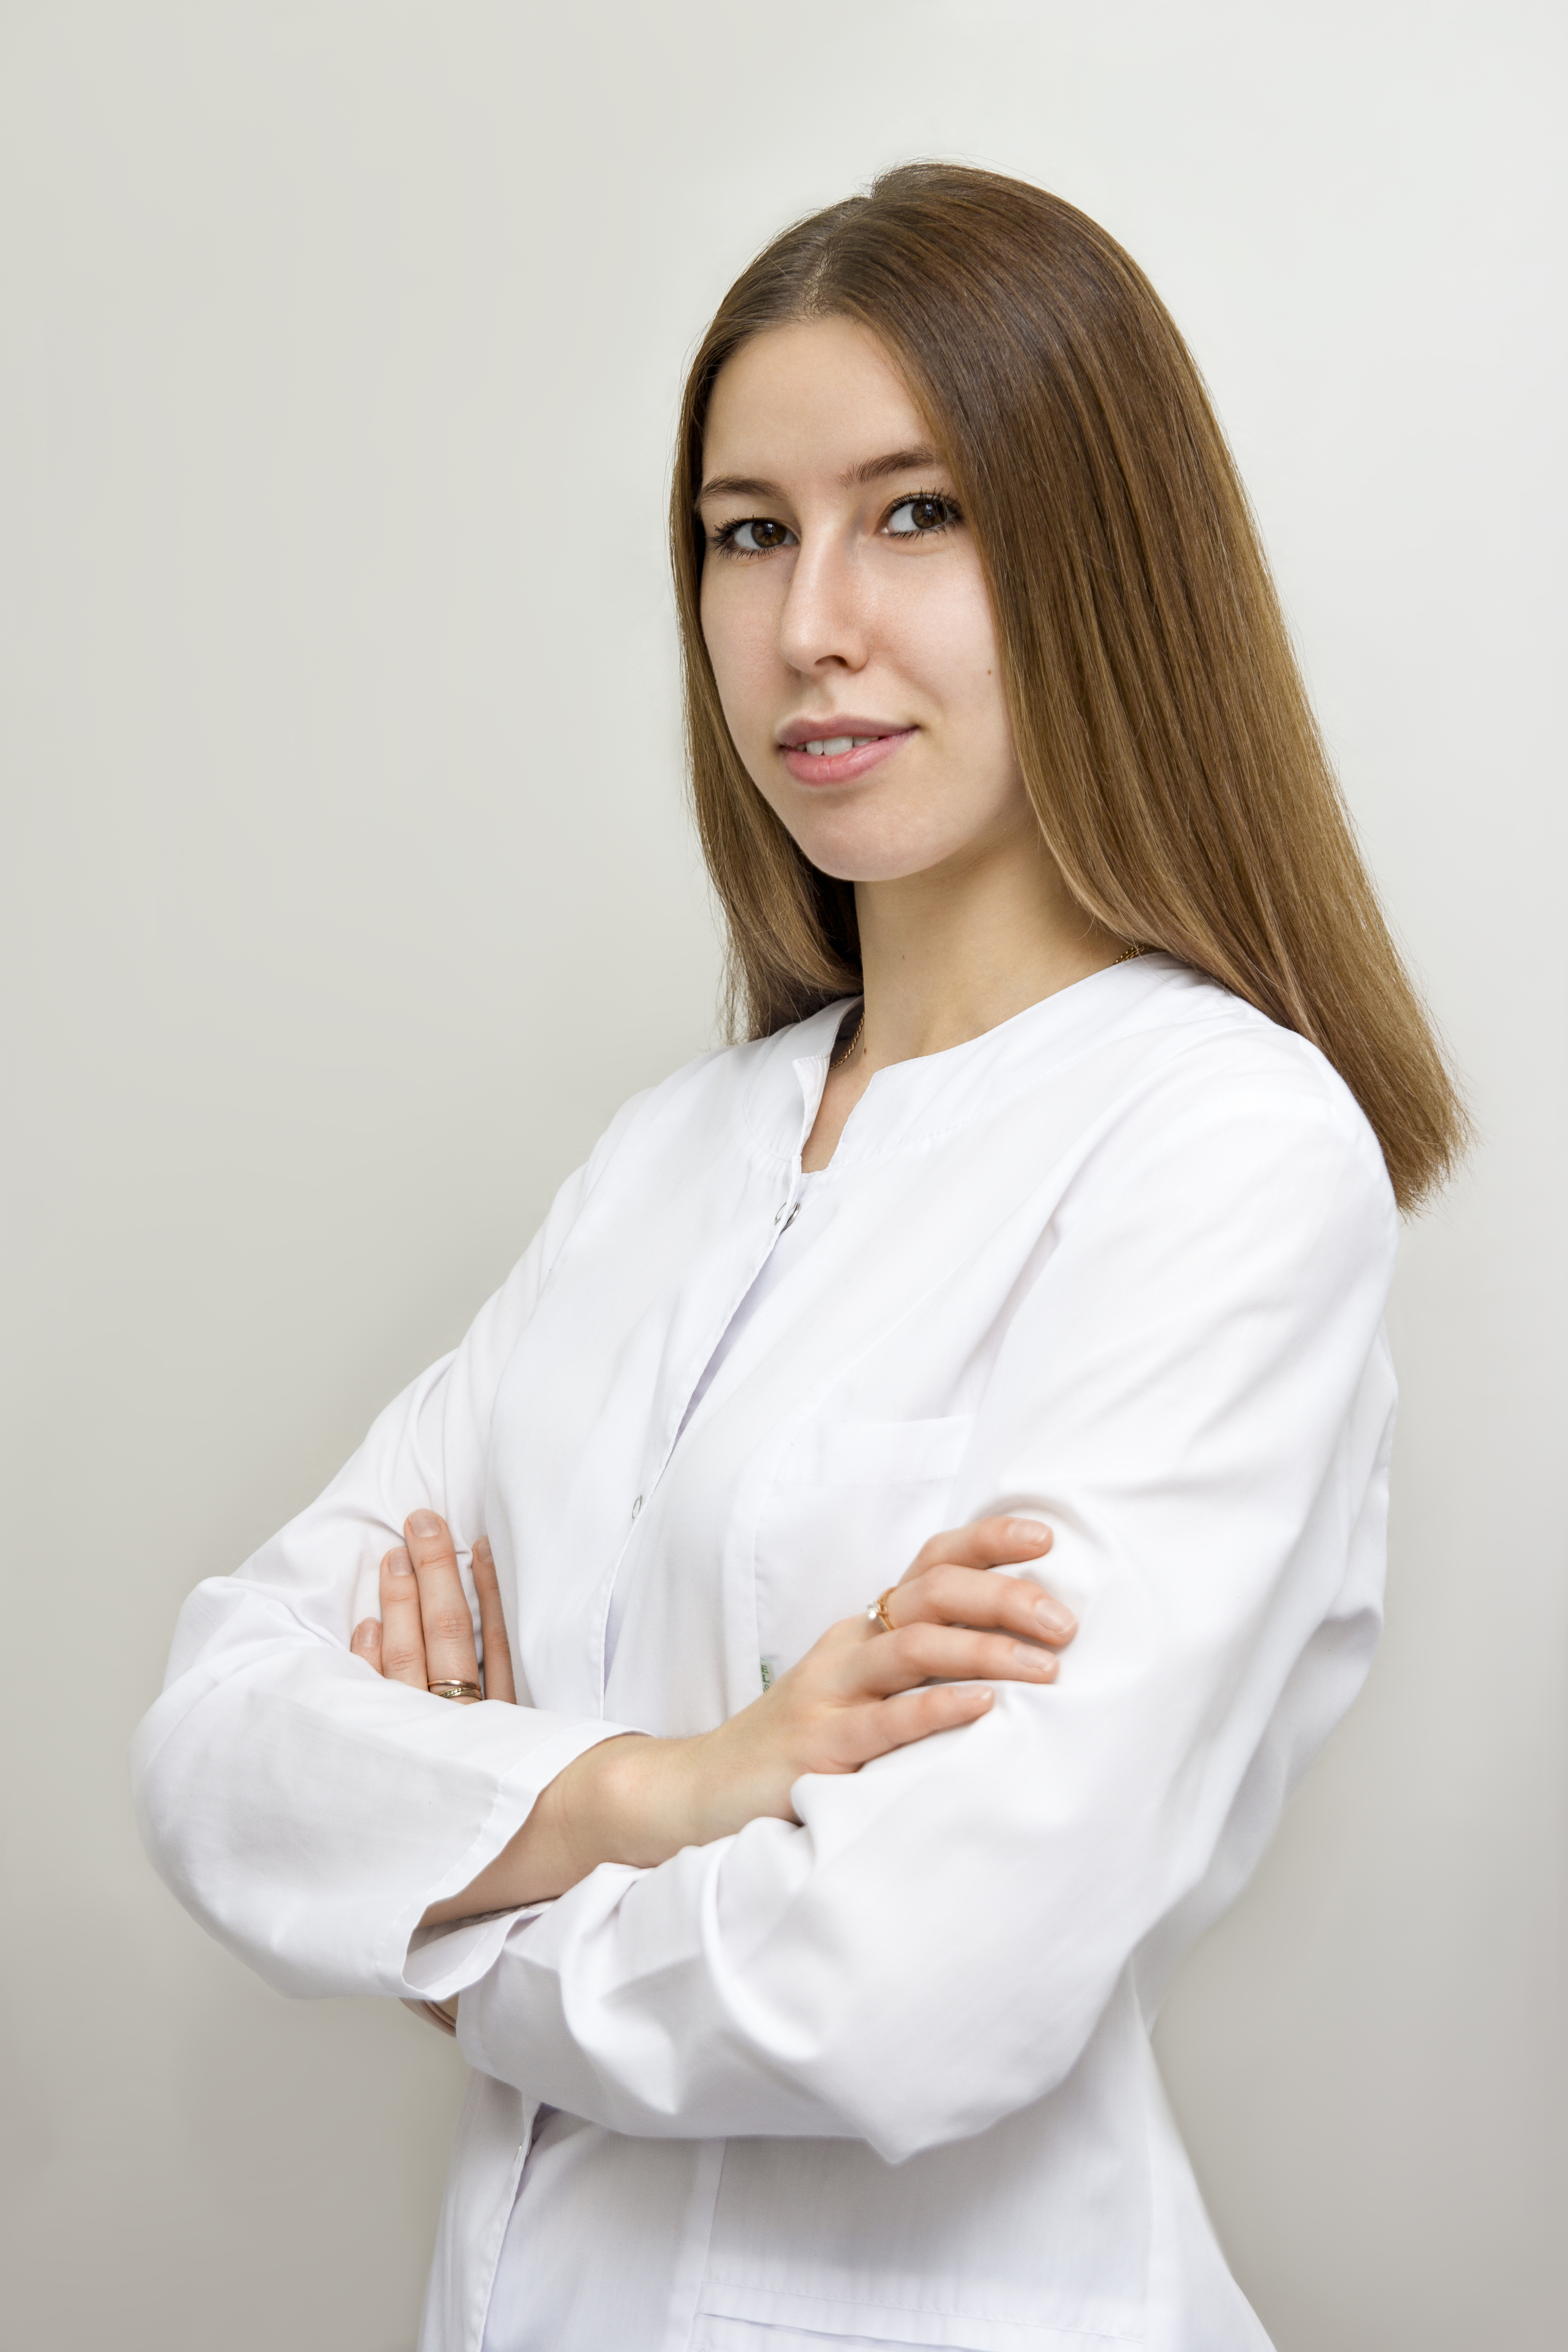 Бузанкина Надежда АлександровнаАссистент стоматолога 